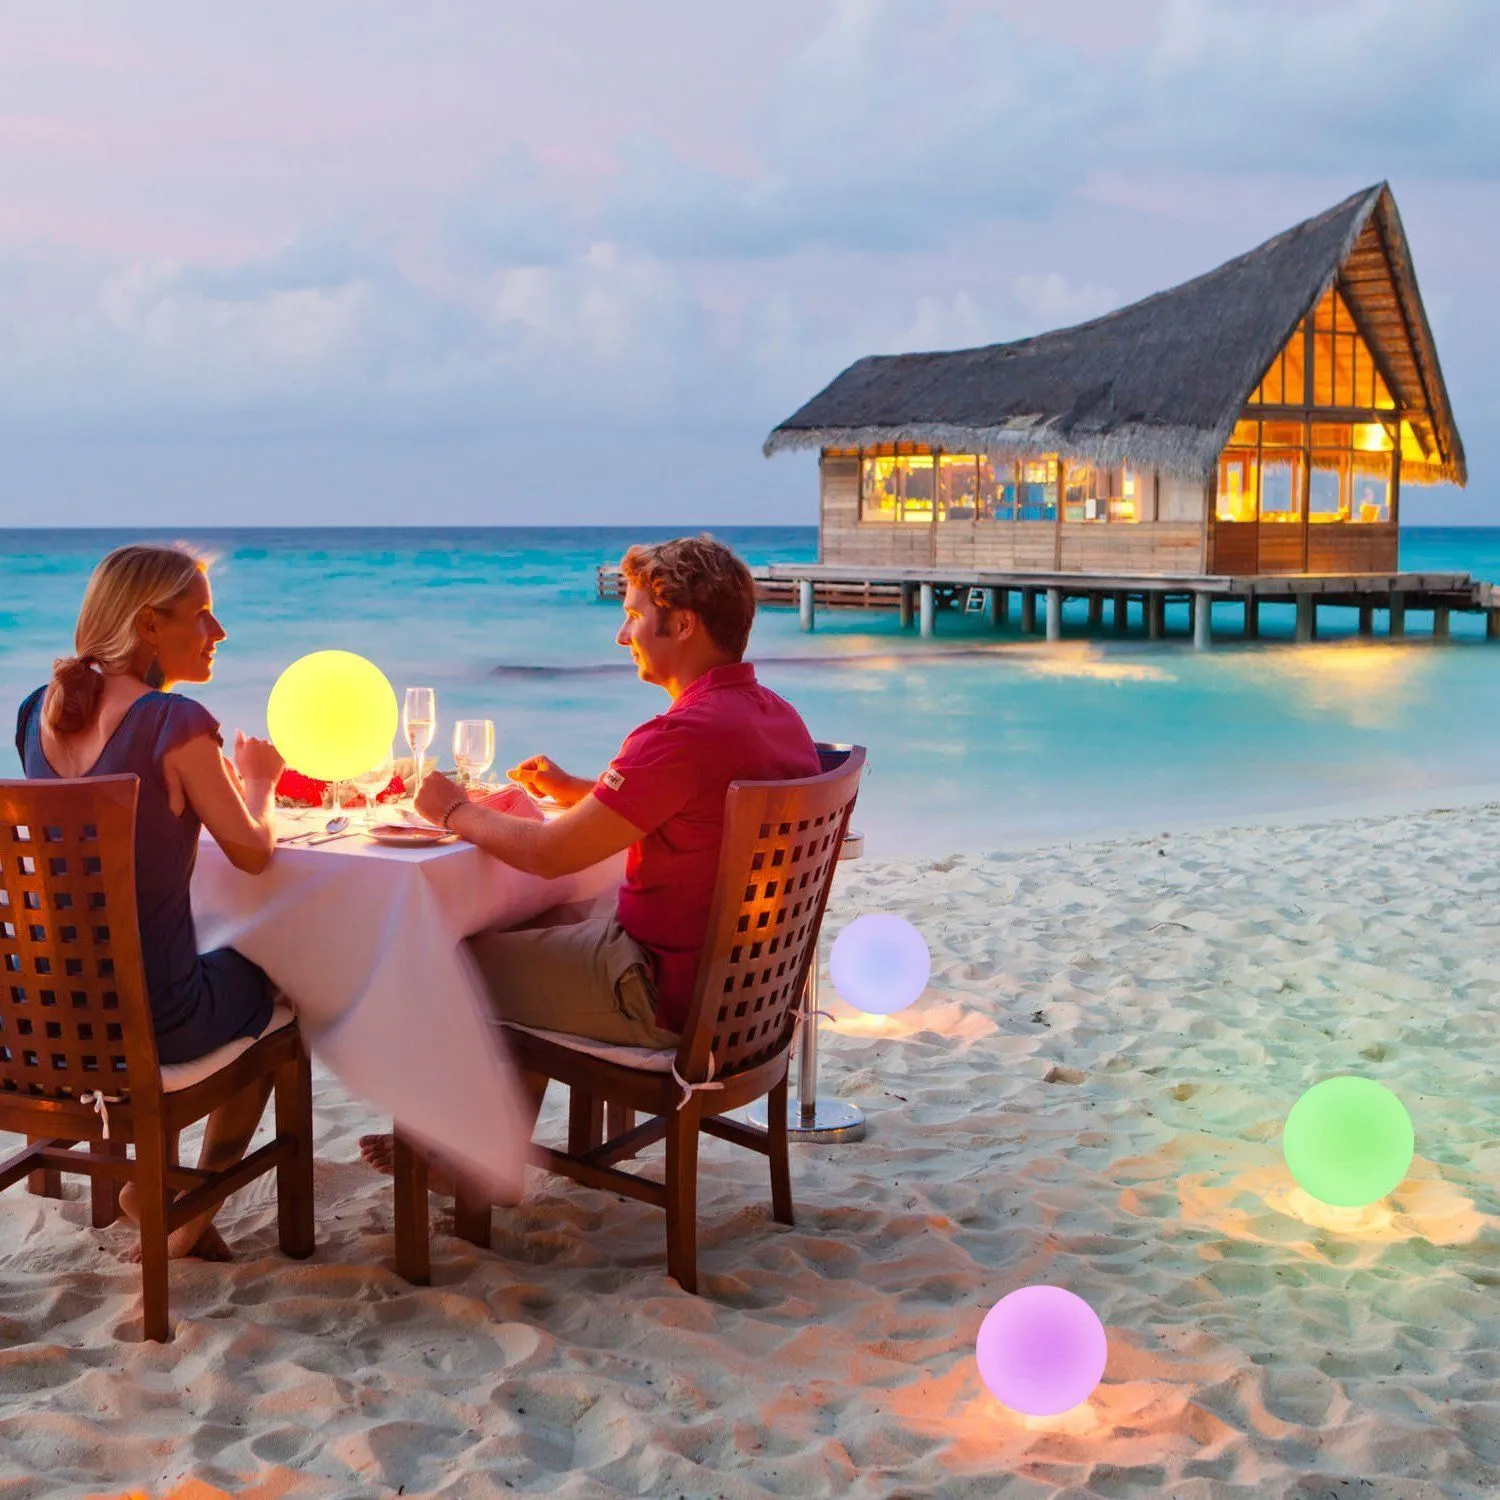 gazonlamp 7 kleur rgb led drijvende magische kogel led verlicht zwembad licht IP68 buiten meubels bar tafellampen met externe